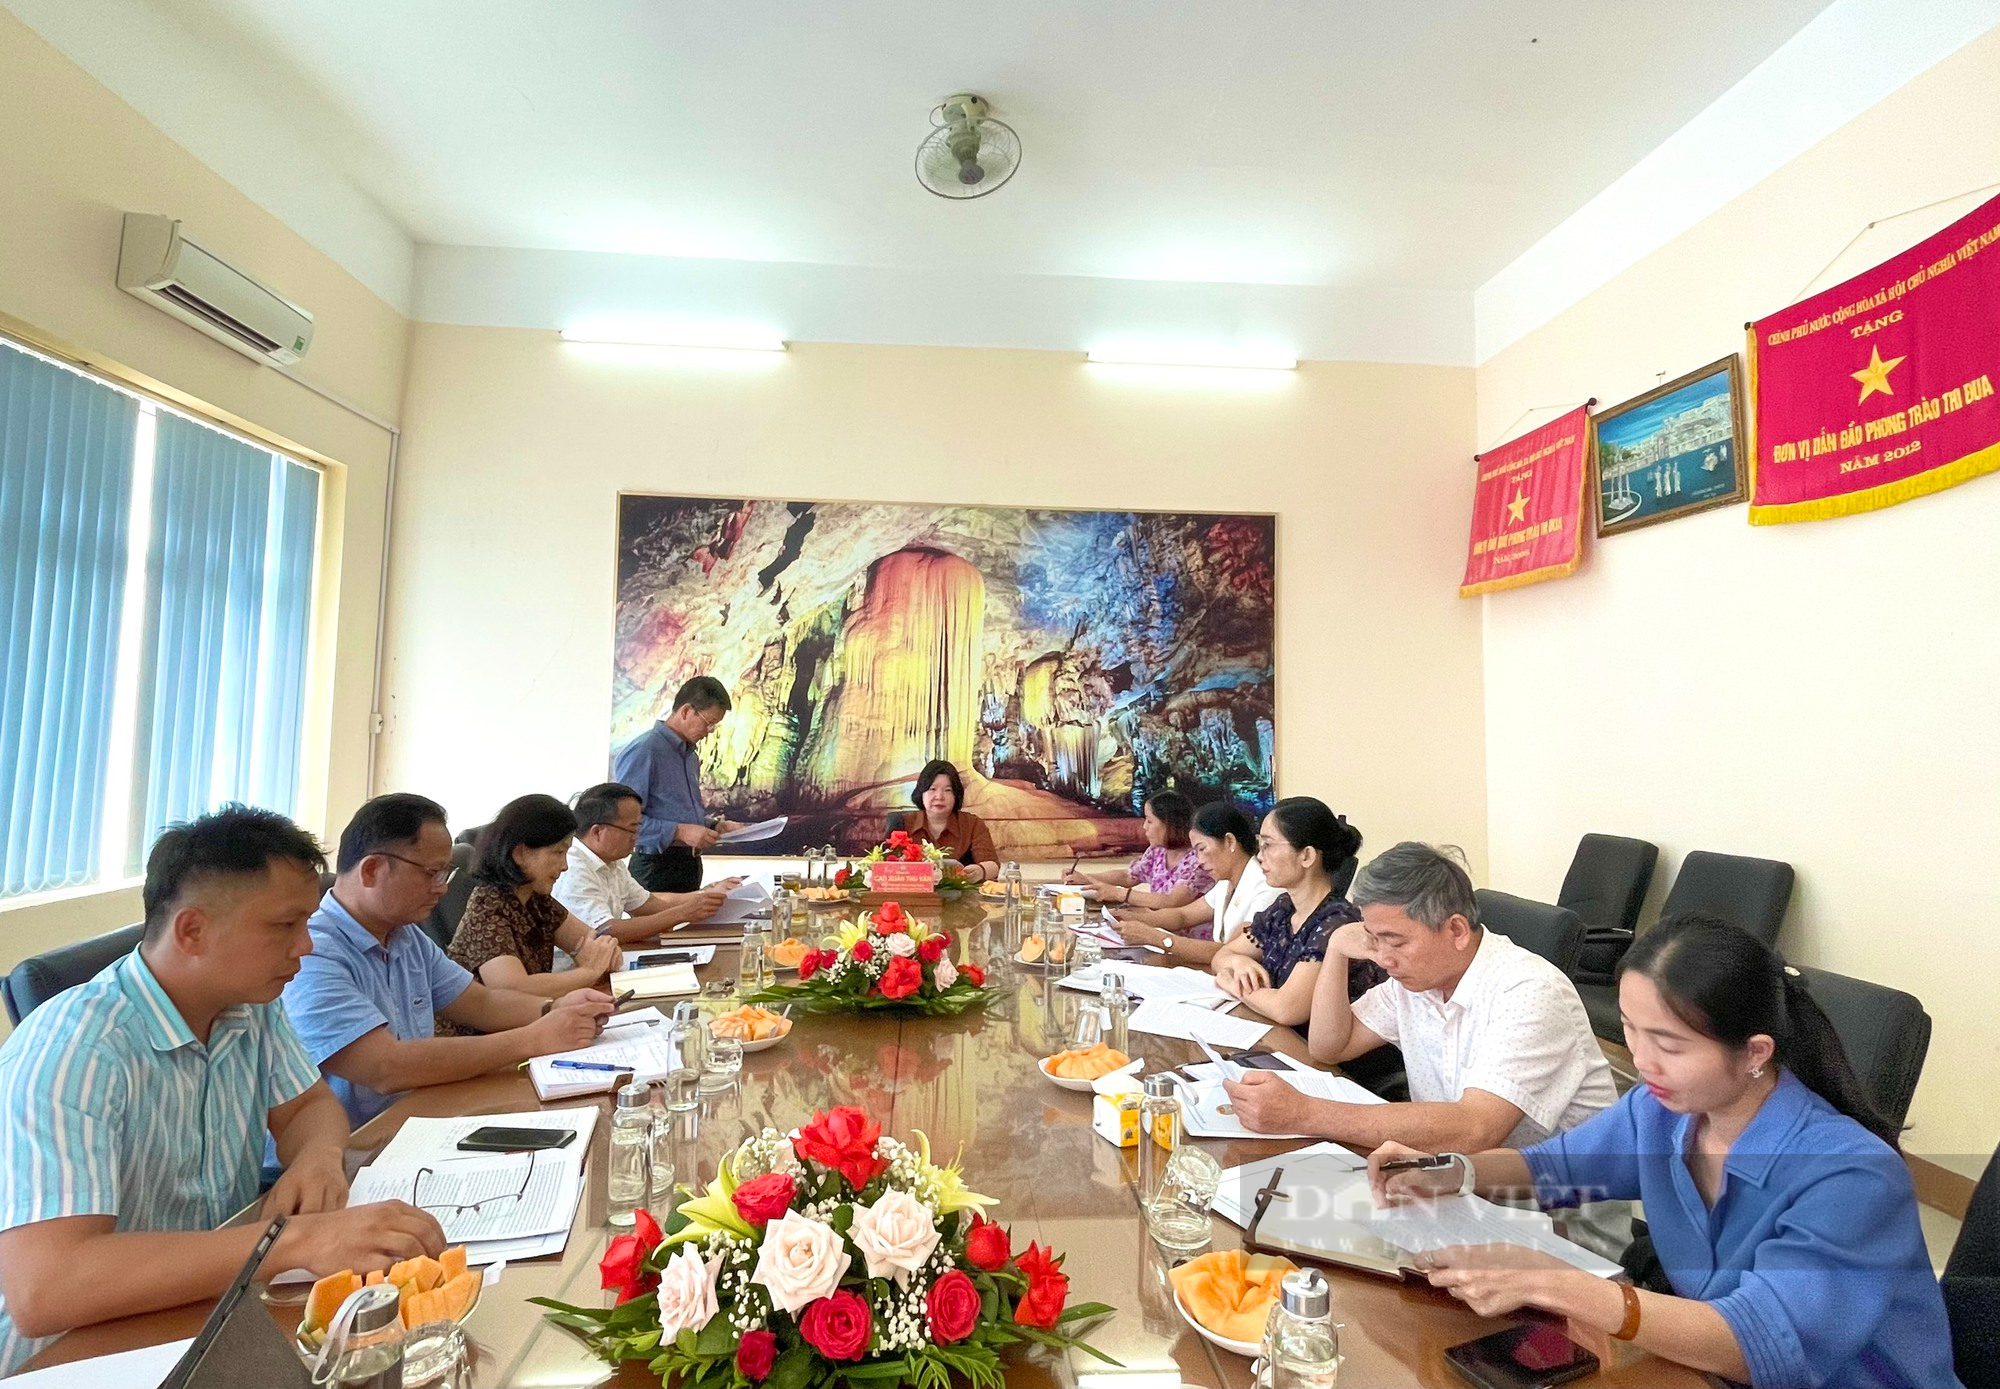 Phó Chủ tịch TƯ Hội NDVN Cao Xuân Thu Vân thăm, làm việc tại tỉnh Quảng Bình - Ảnh 1.